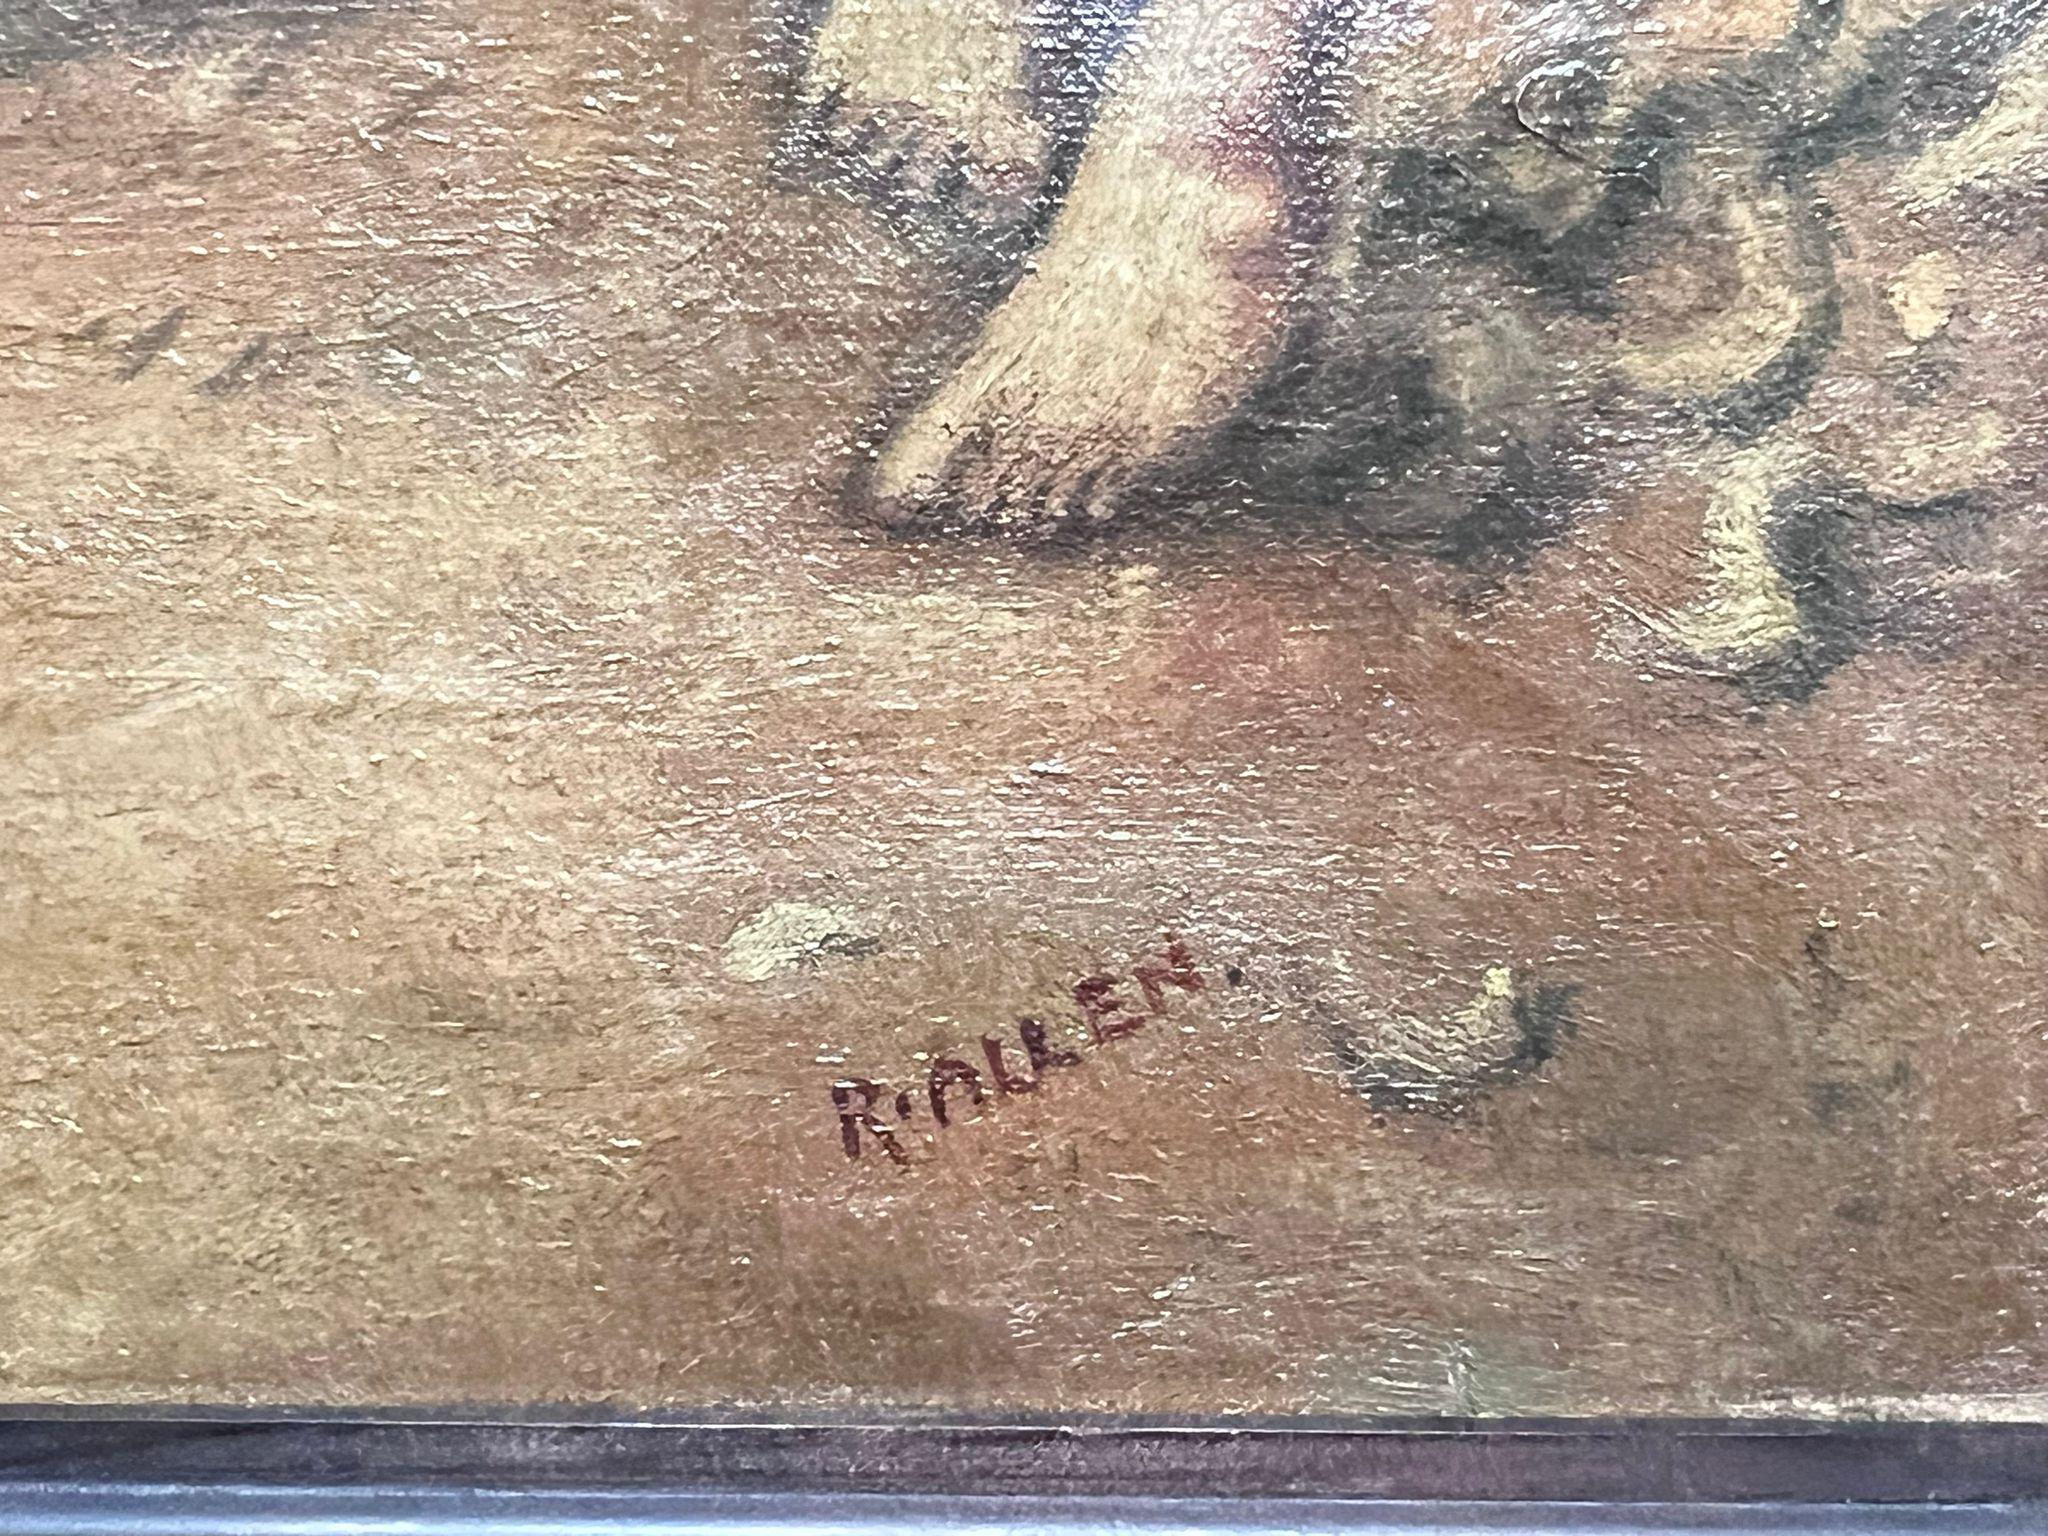 Die Tischlerwerkstatt
Britische Schule, Ende des 19. Jahrhunderts
basierend auf dem präraffaelitischen Gemälde von Millais
Öl auf Leinwand, gerahmt
Gerahmt: 27,5 x 39 Zoll
Leinwand: 24 x 36 Zoll
Provenienz: Privatsammlung, Großbritannien
Zustand: